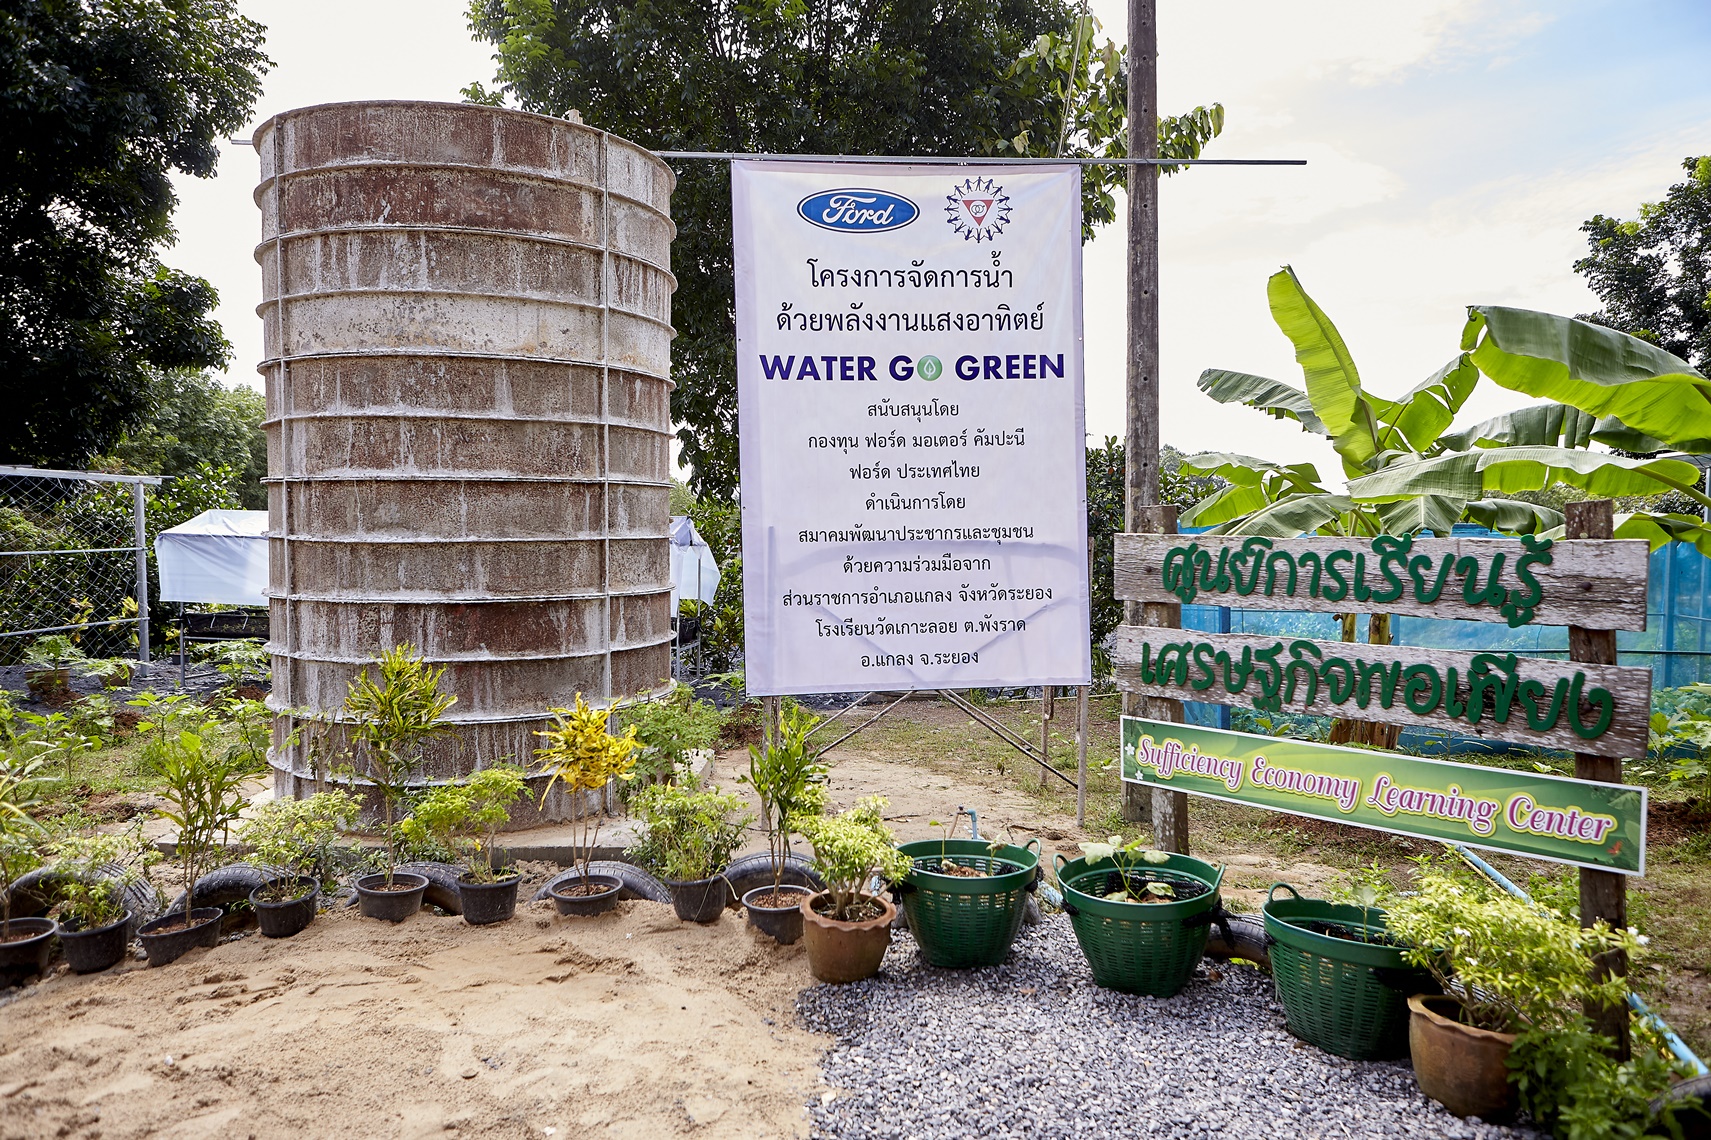 ฟอร์ดปลุกพลังจิตอาสา จัดกิจกรรม ‘Water Go Green’ ปีที่ 5 ทำระบบจัดการน้ำพลังงานแสงอาทิตย์และแปลงผักตามวิถีเกษตรอินทรีย์